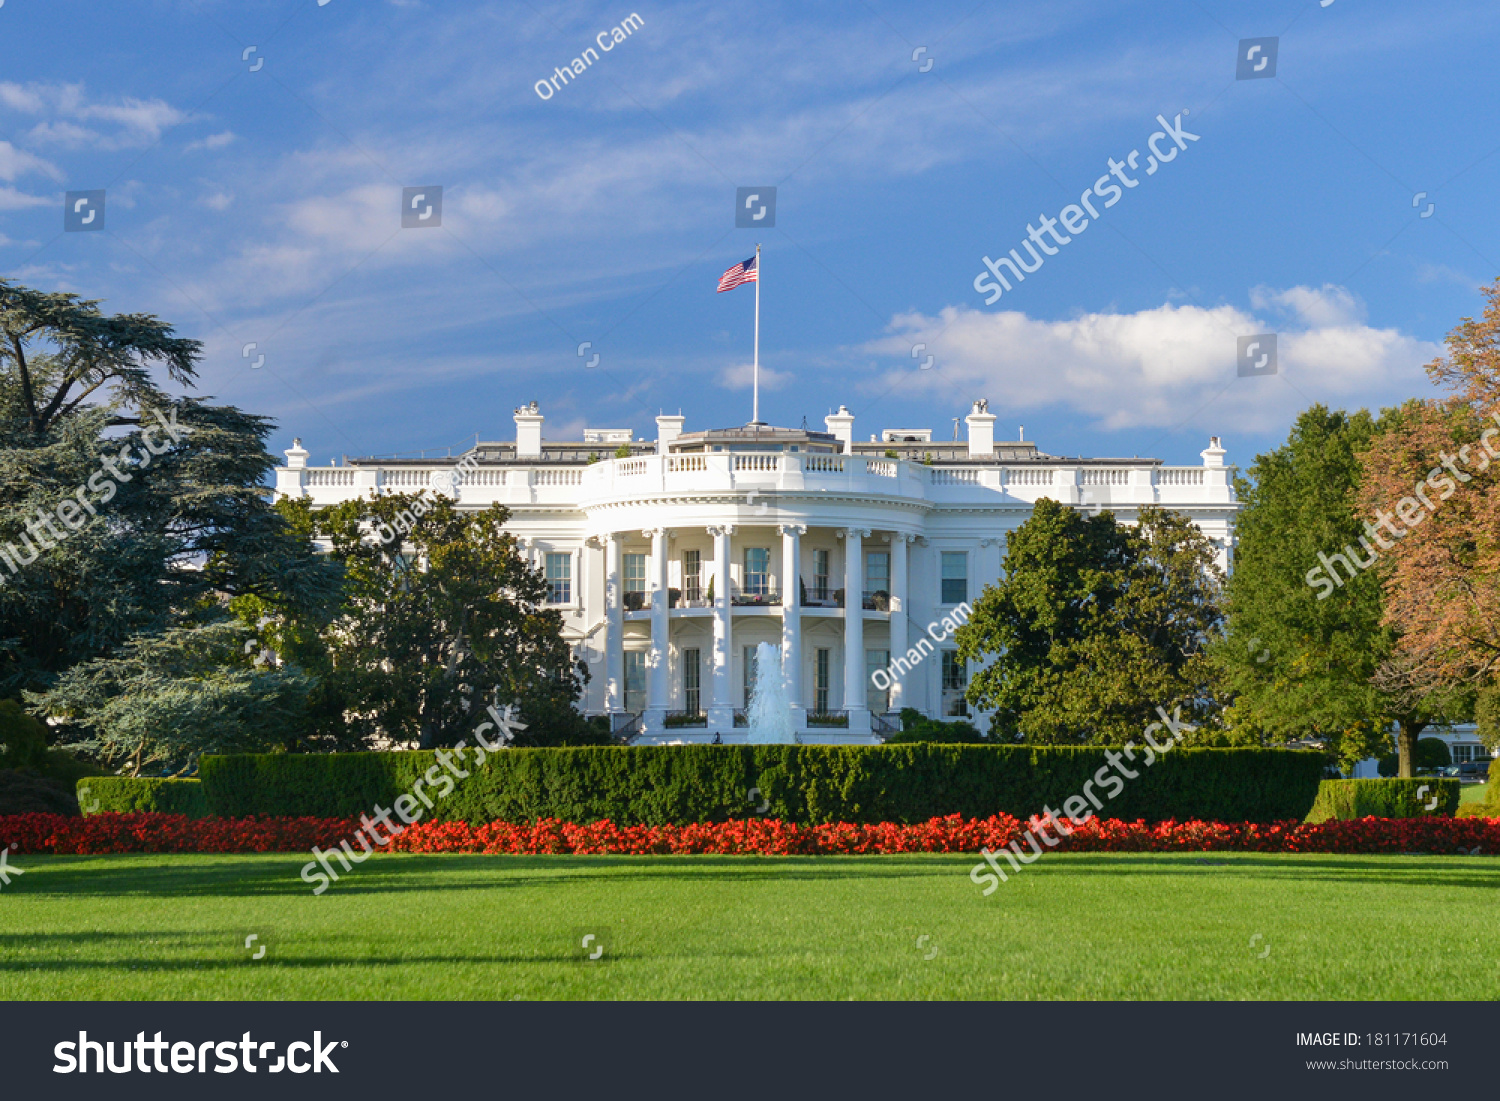 The White House - Washington DC, United States #181171604